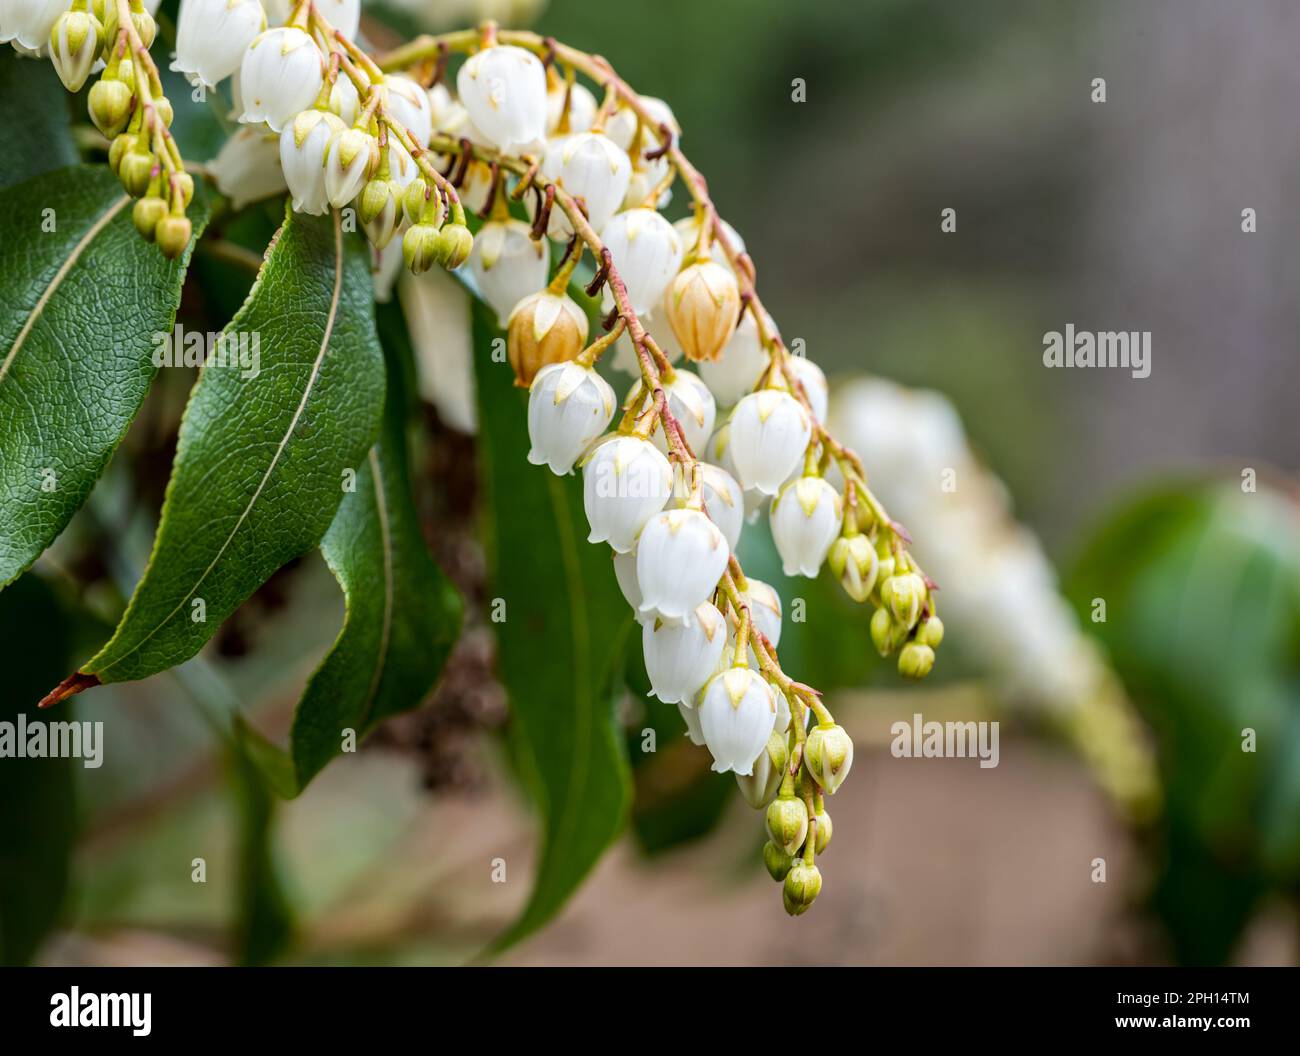 Nahaufnahme der Blumen von Taiwan pieris oder Himalayan andromeda (Pieris formosa), Royal Botanic Garden, Edinburgh, Schottland, Großbritannien Stockfoto